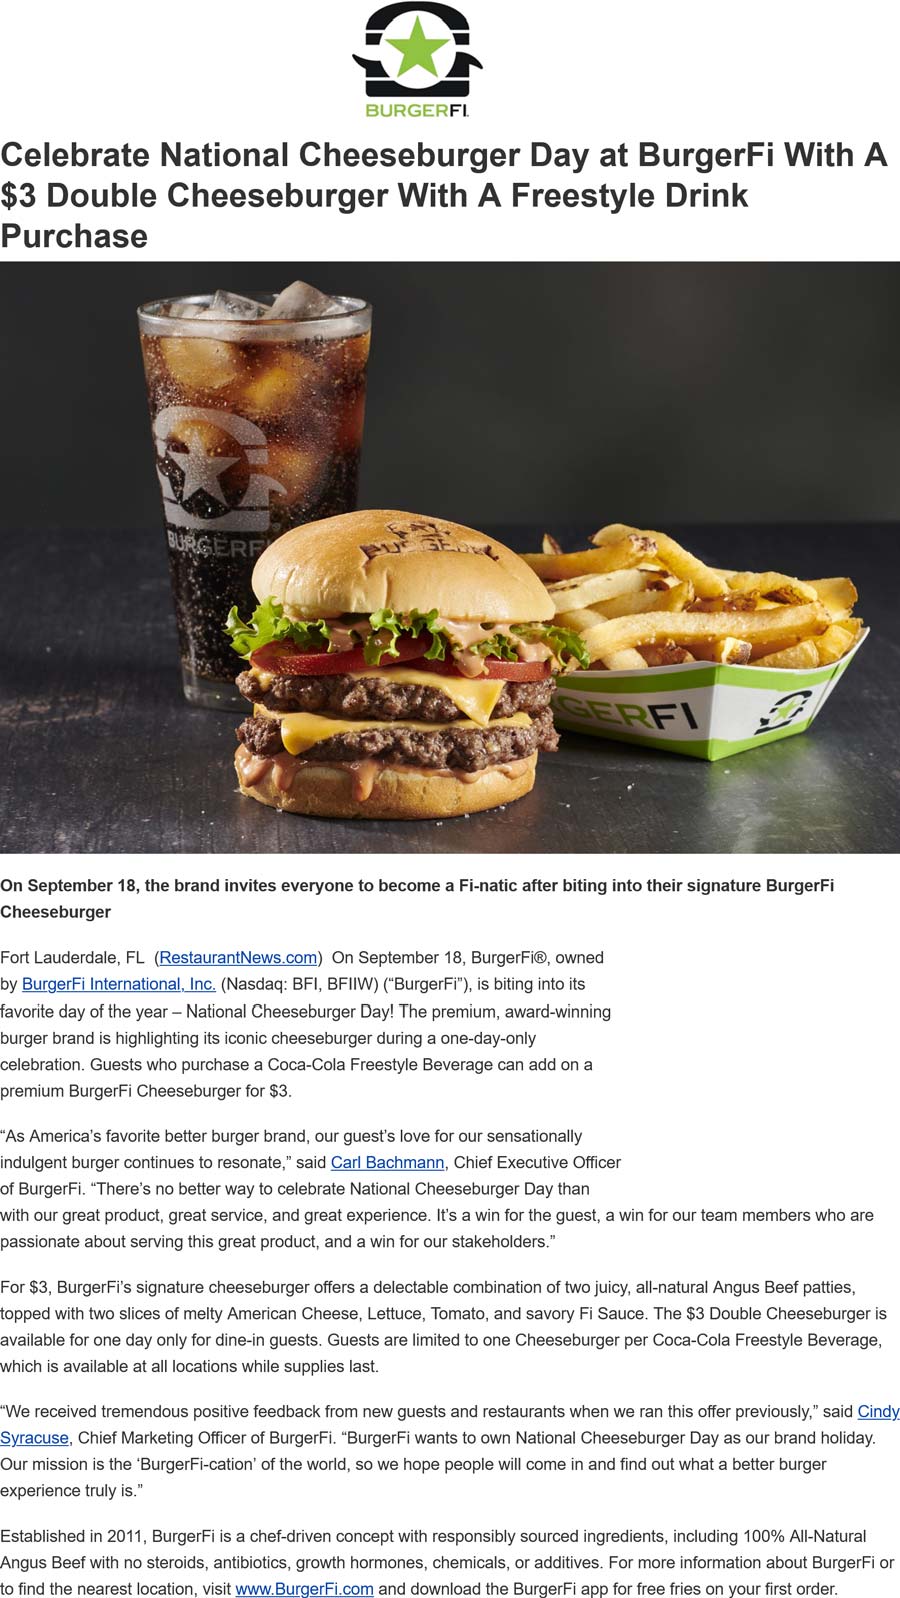 Burger Fi restaurants Coupon  $3 double cheeseburger with your drink today at Burger Fi #burgerfi 